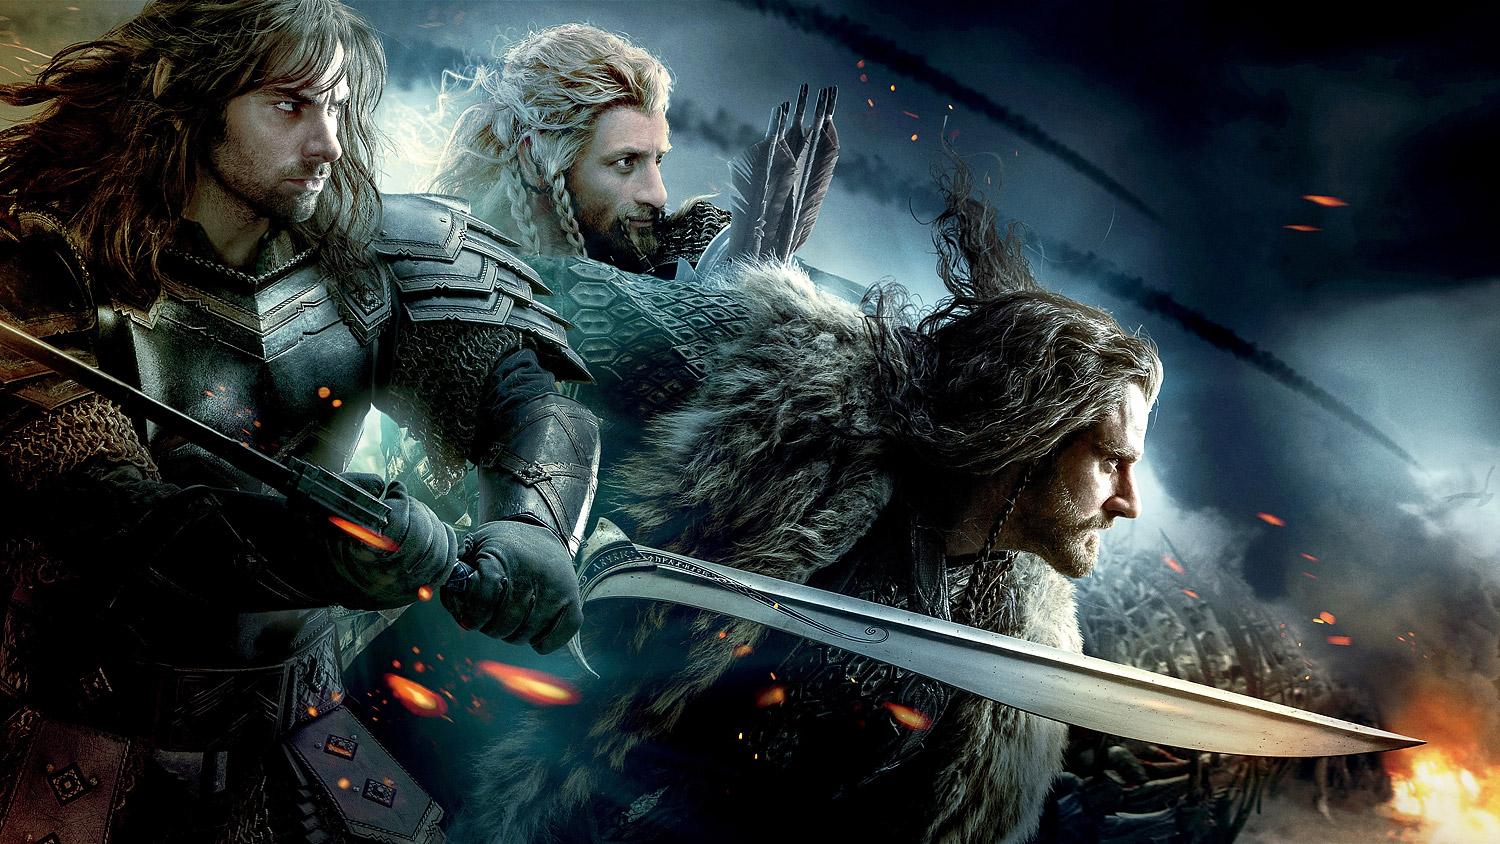 Le Hobbit : La Bataille des Cinq Armées | Fond d'écran